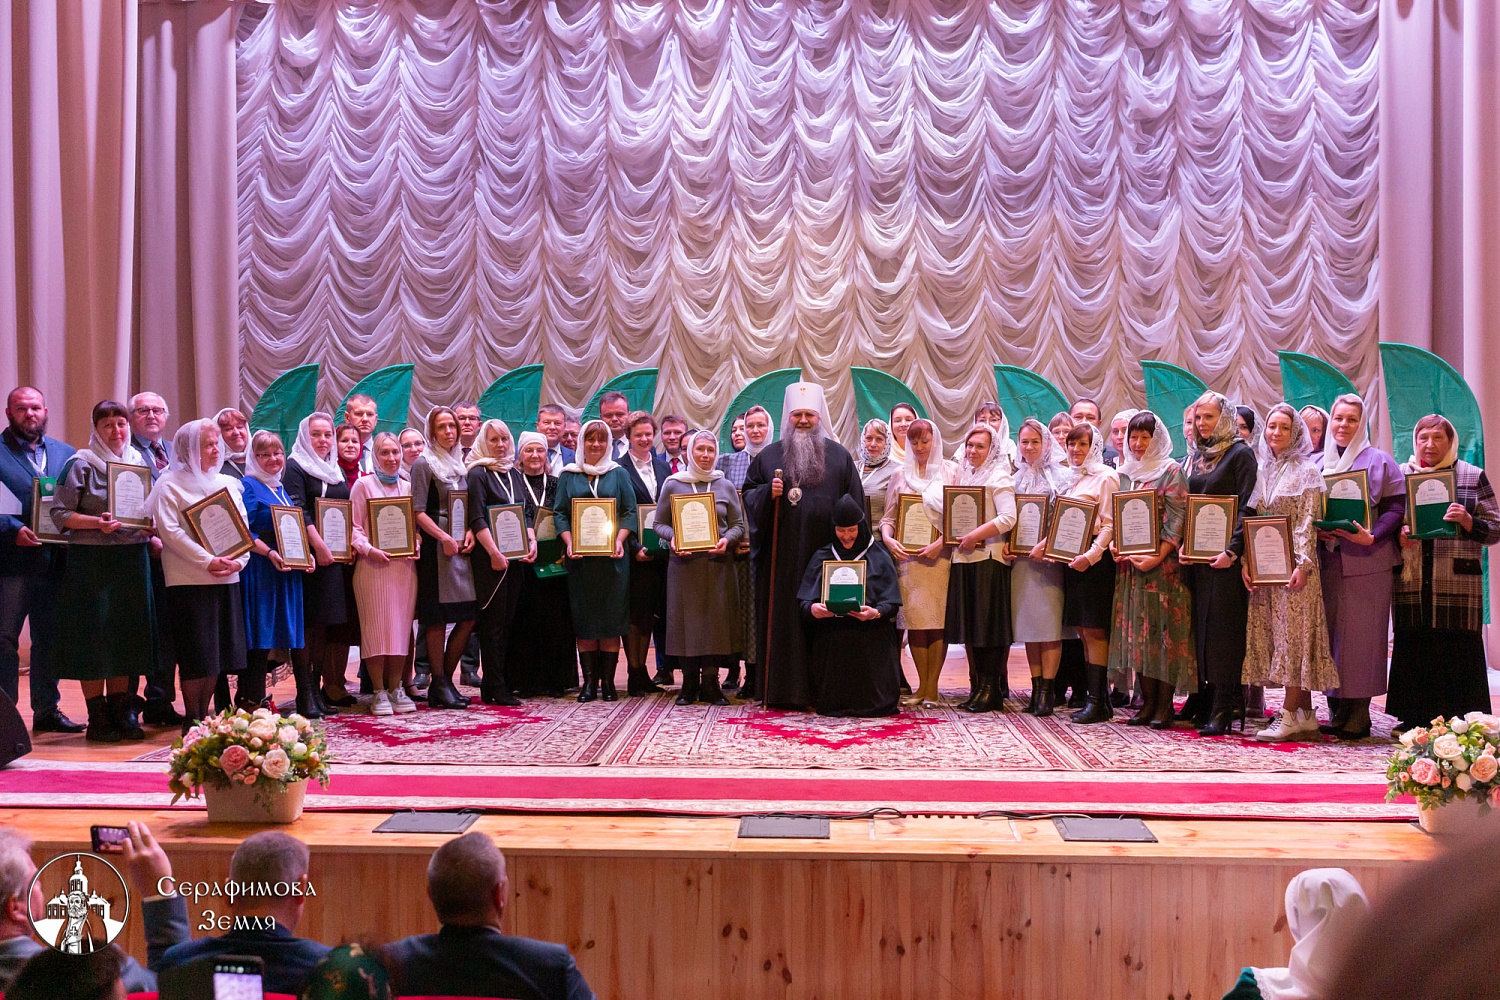 Заслуженная награда – знак «Серафимовский наставник» - была вручена сотруднику СибФНКЦ в Нижегородской области